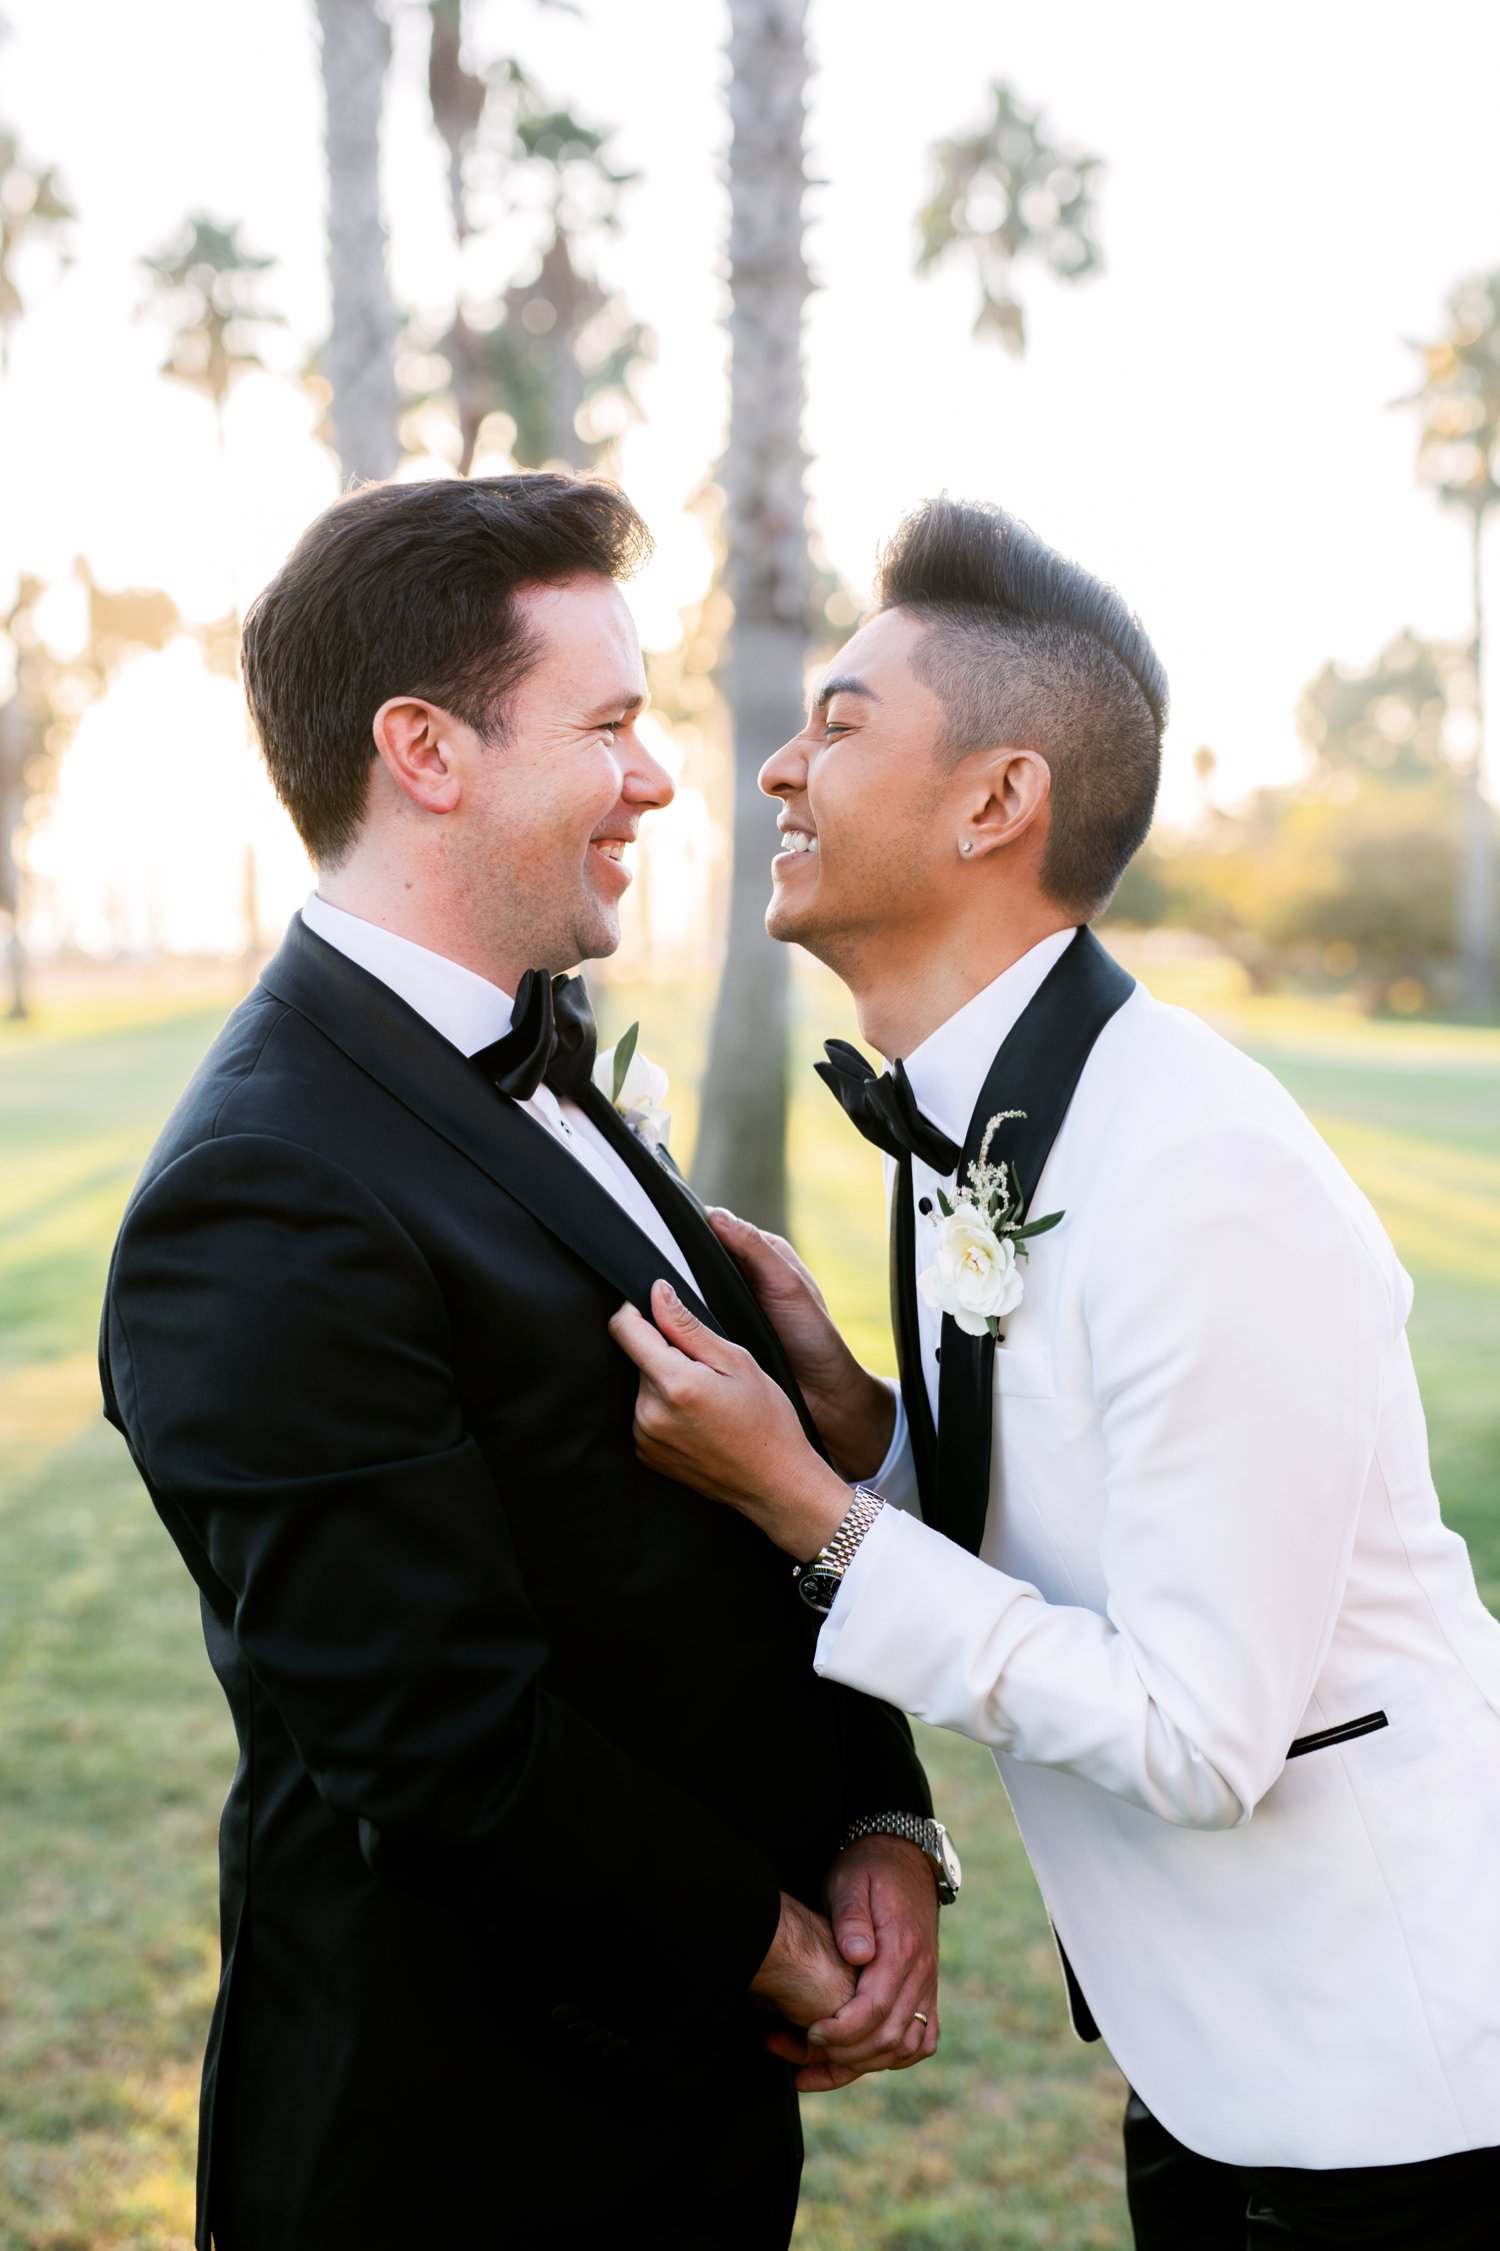 Same sex wedding photos Santa Barbara